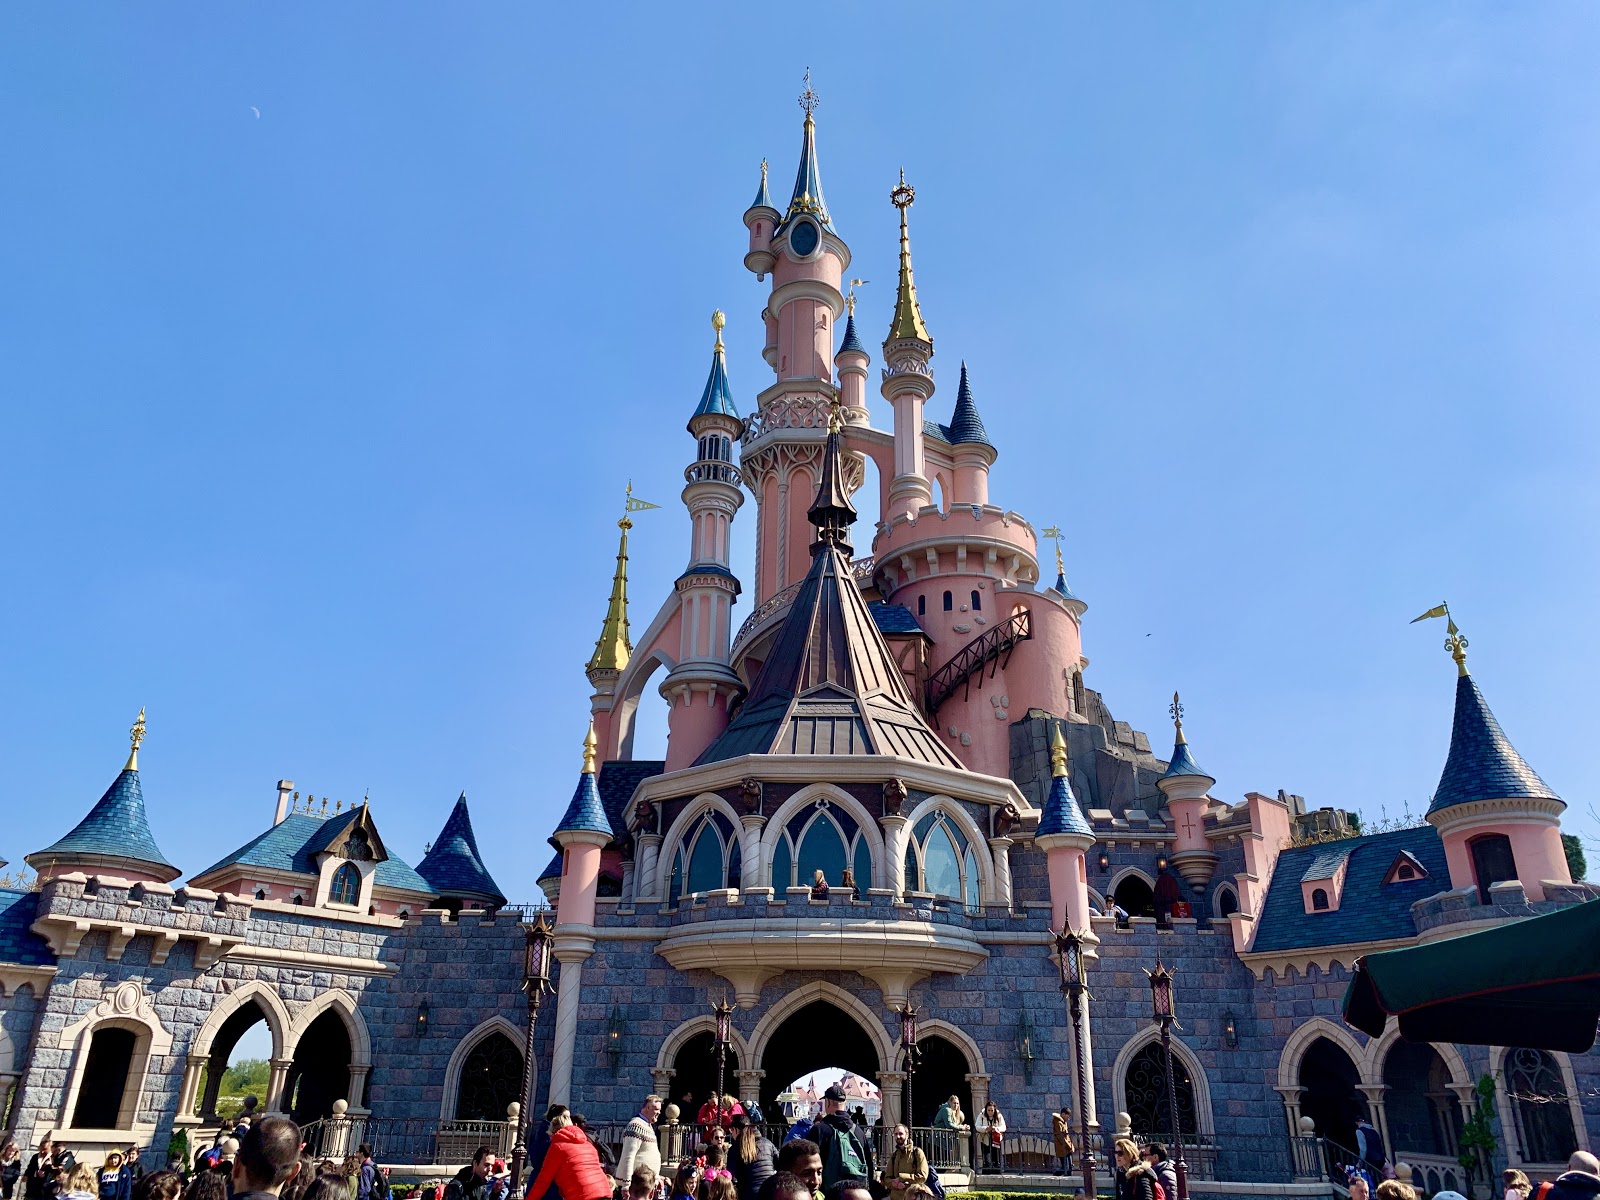 Sleeping Beauty Castle: Le Château de la Belle au Bois Dormant at Disneyland  Paris – Disney Insights